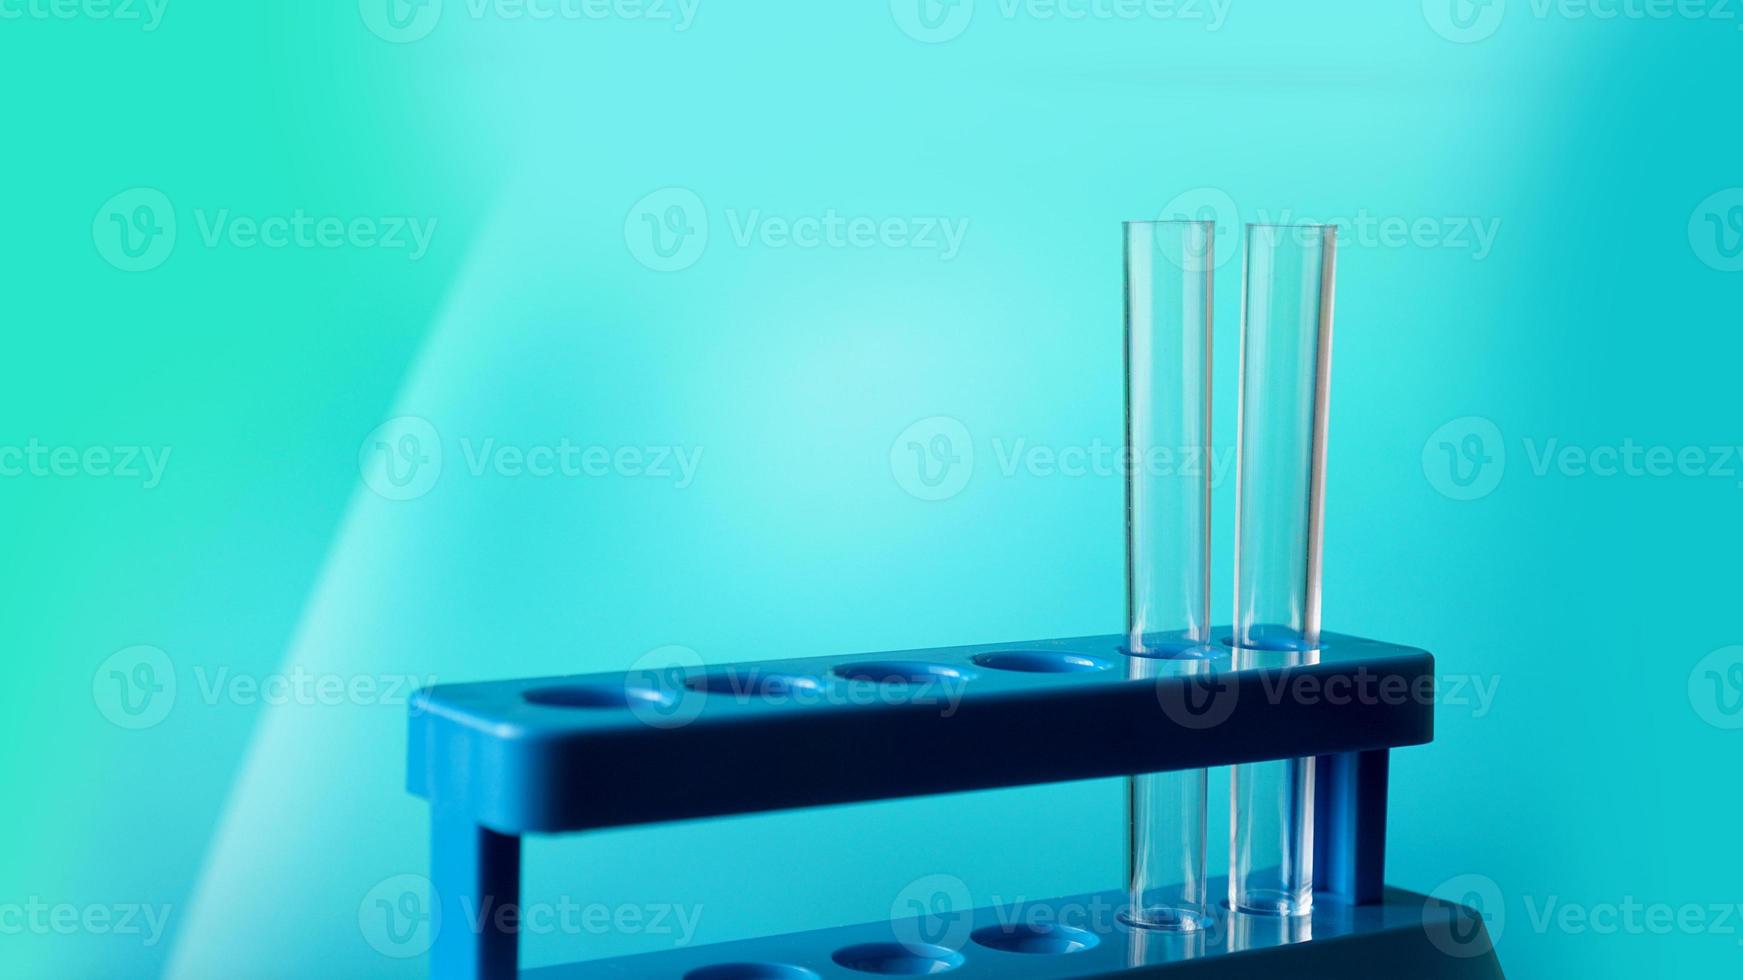 reageerbuisjes op een blauwe standaard tegen een blauwe achtergrond foto